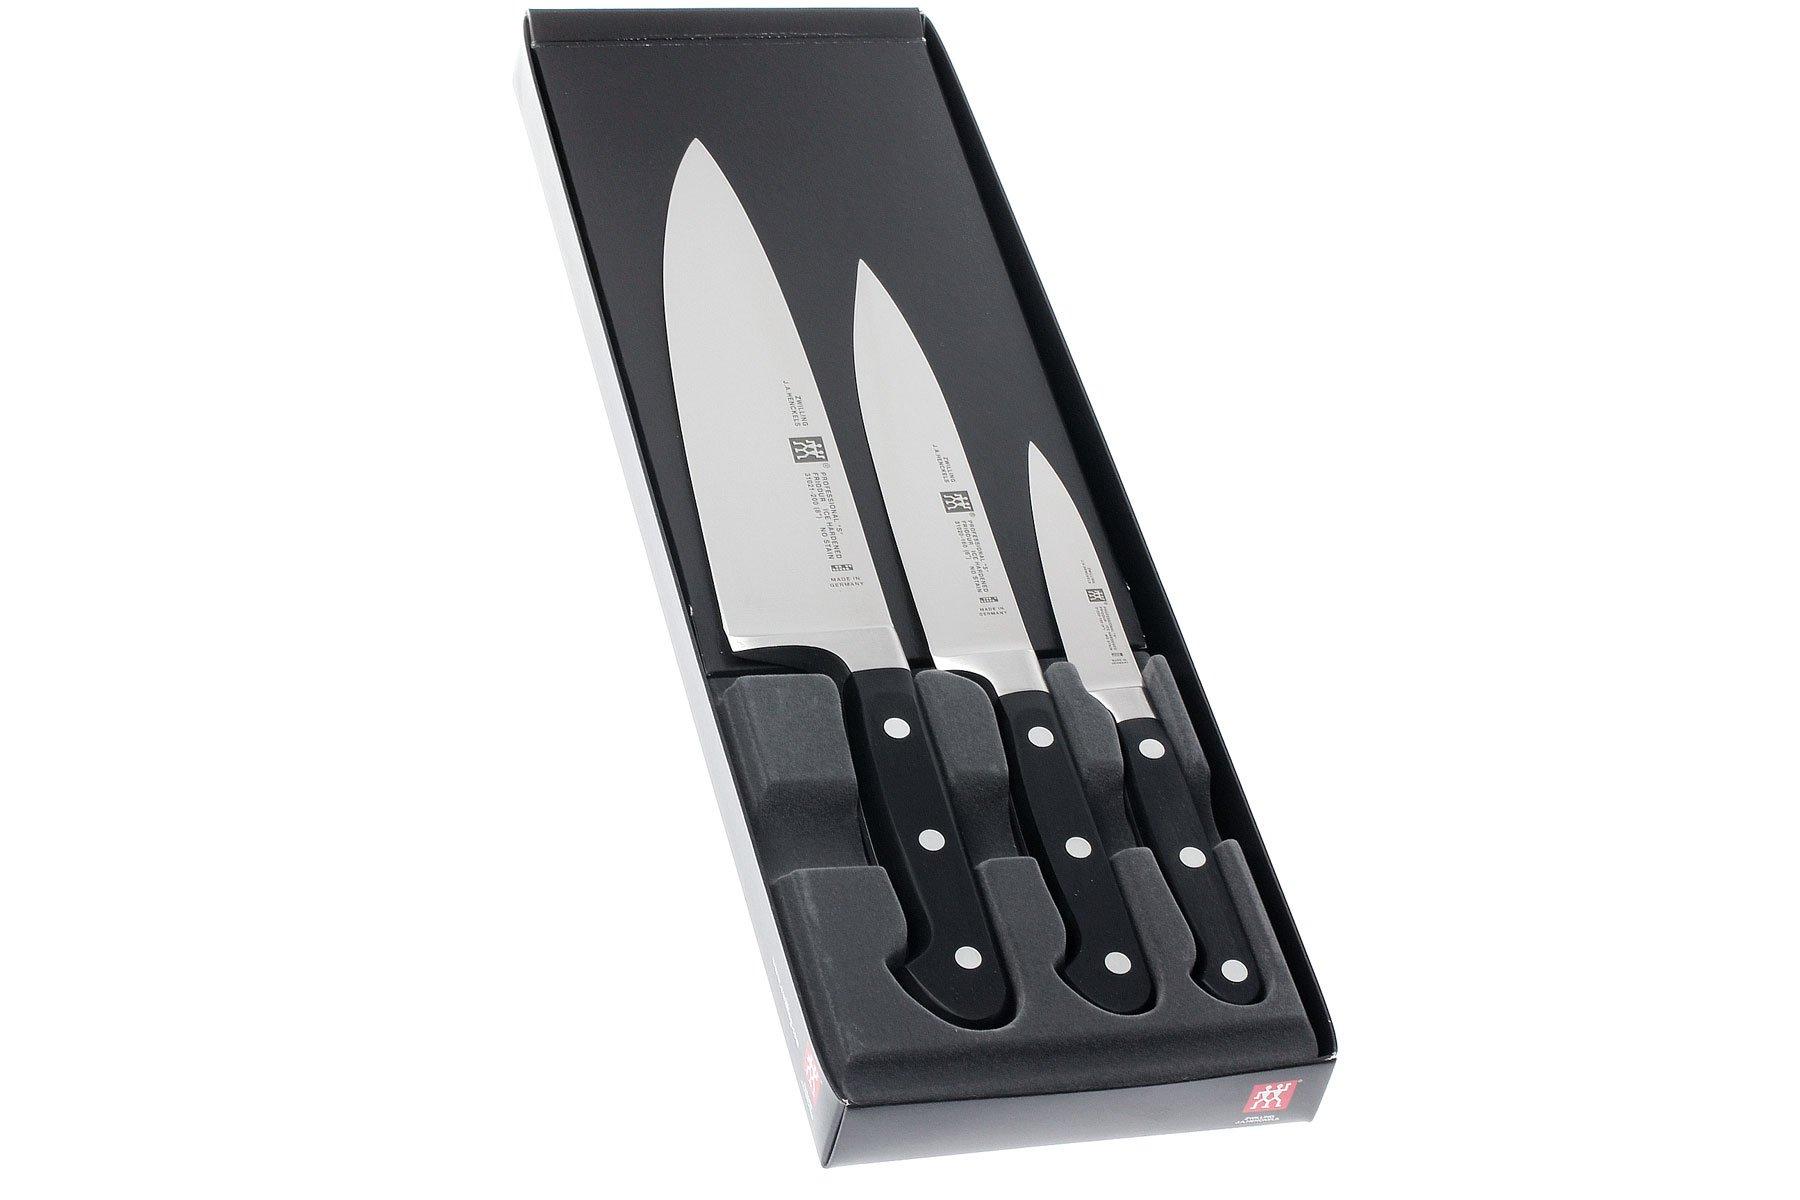 JA Henckels Paring Knife Set - 3 knives